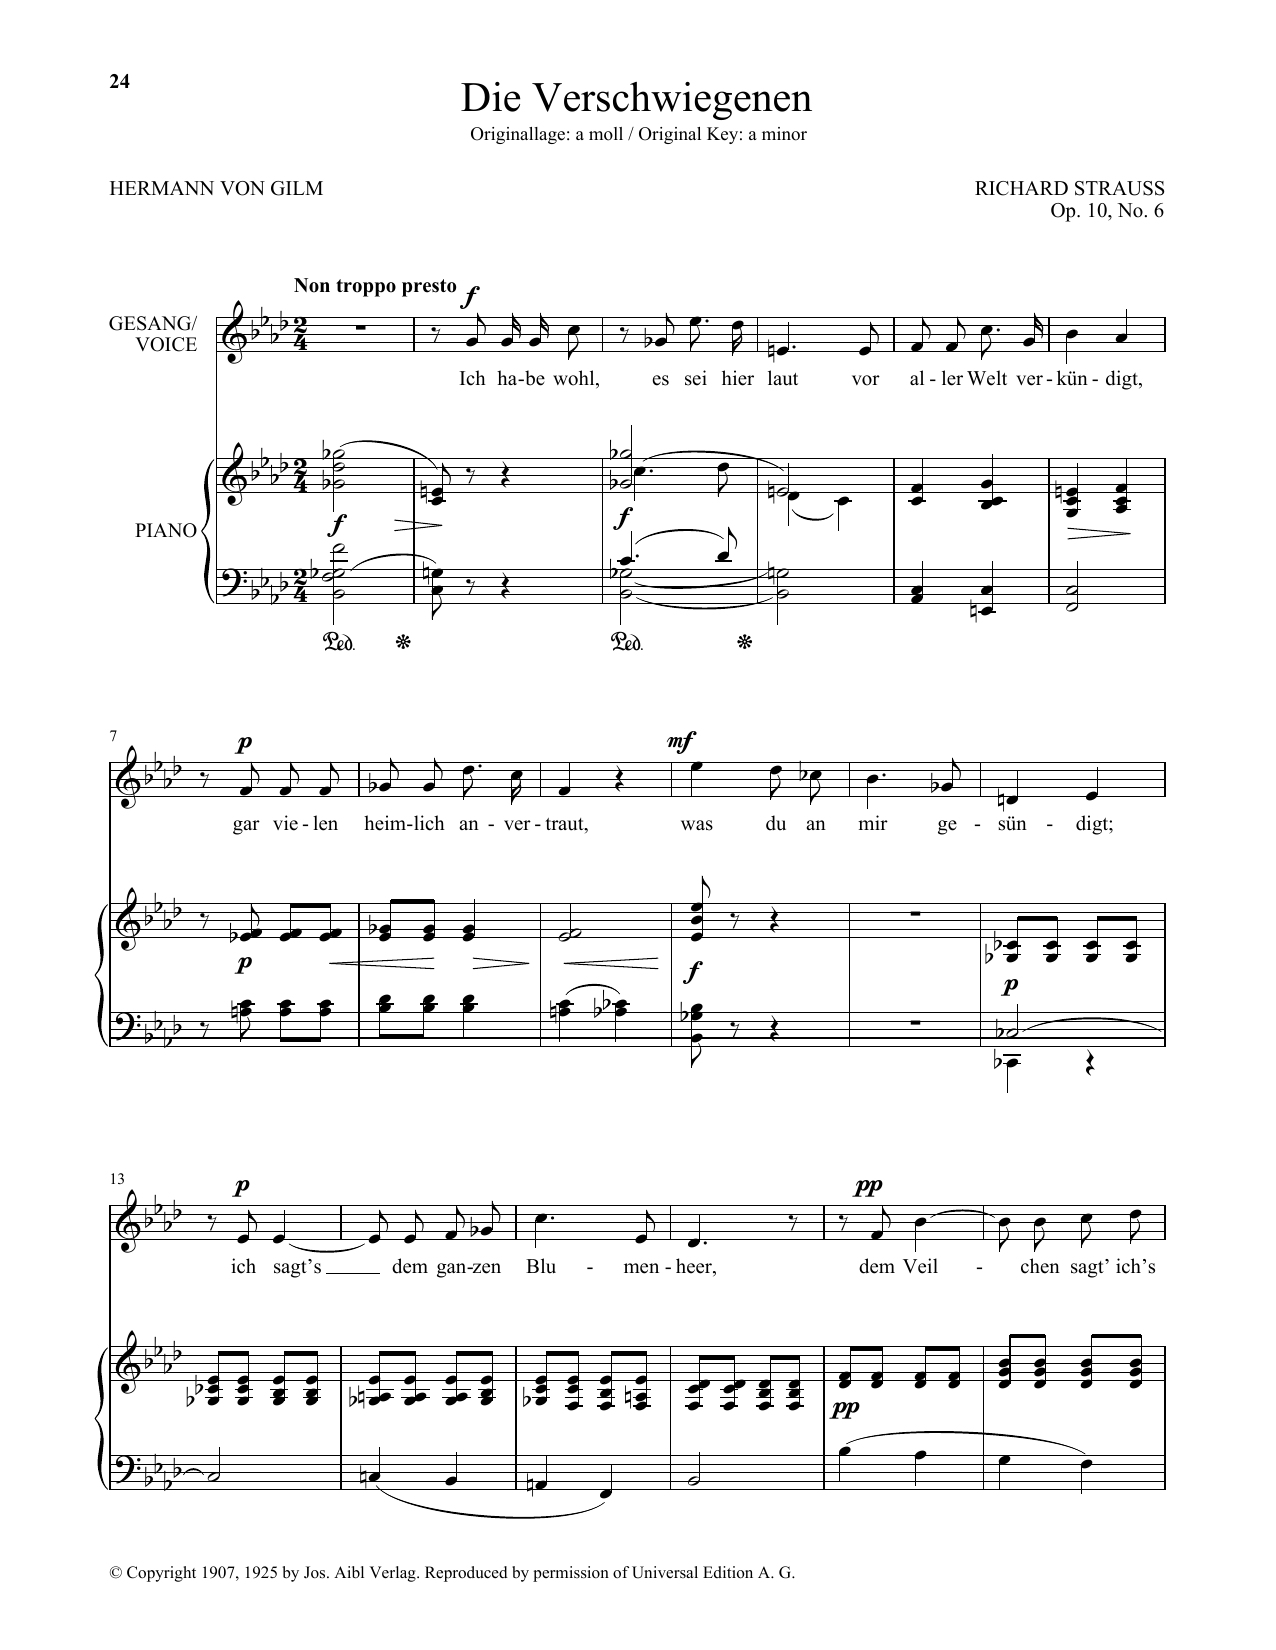 Download Richard Strauss Die Verschwiegenen (Low Voice) Sheet Music